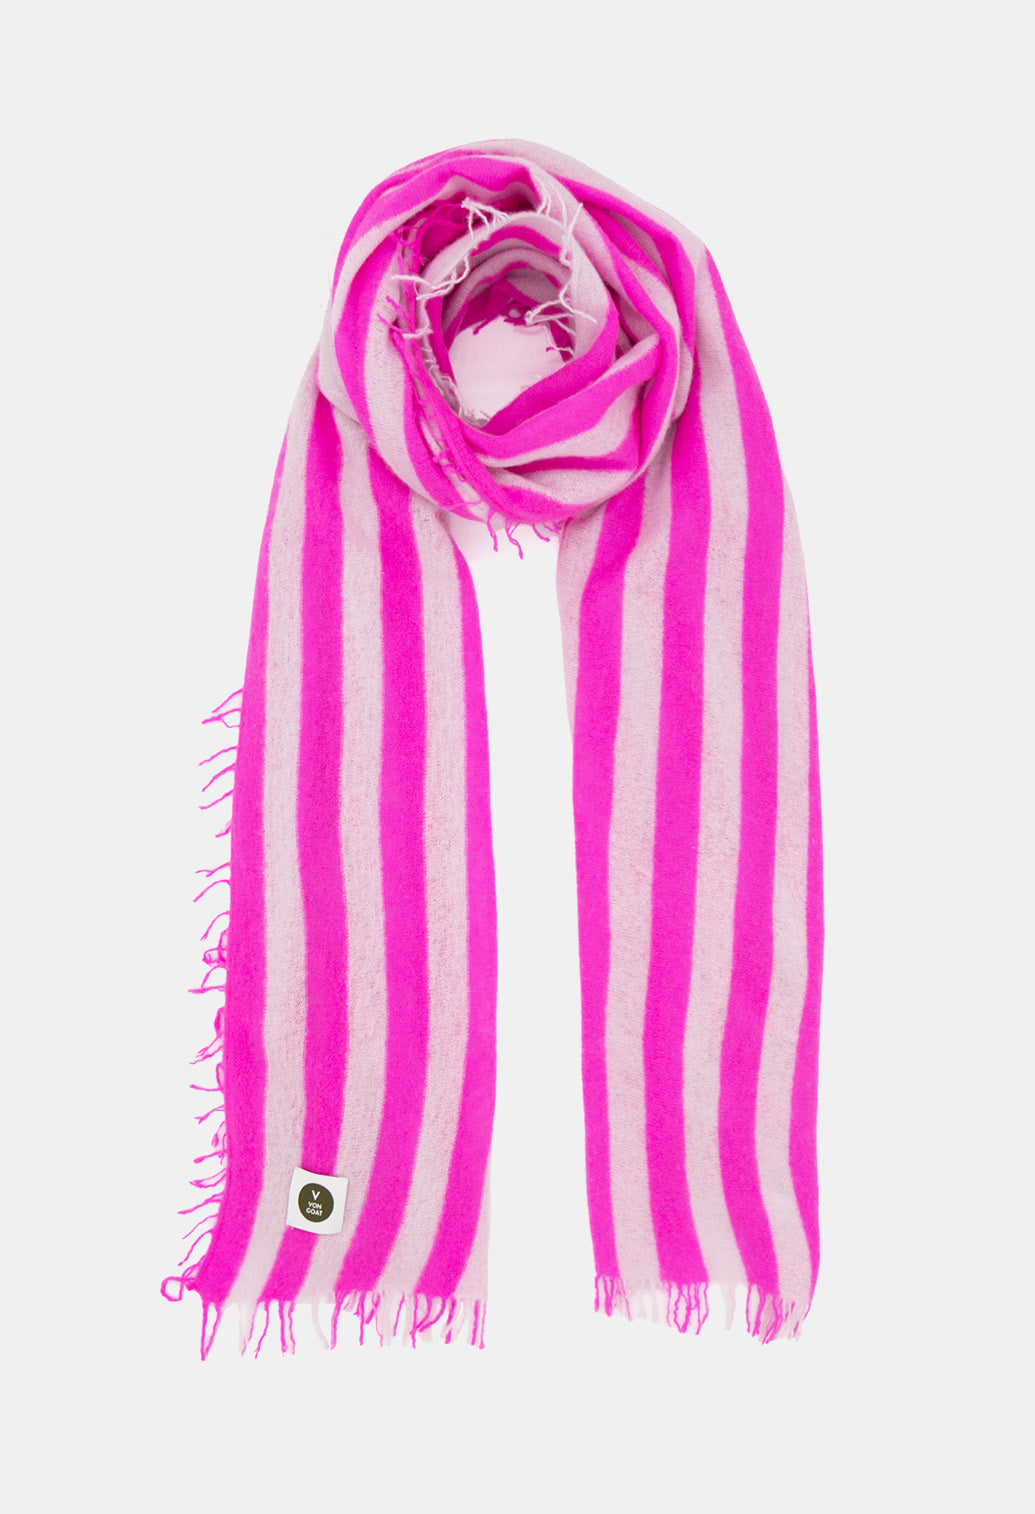 V Von Goat Kaschmir-Schal mit Fransen im Stripes-Stil in den Farben Neon Pink und Grau aus reiner Cashmere-Wolle auf weißem Untergrund.